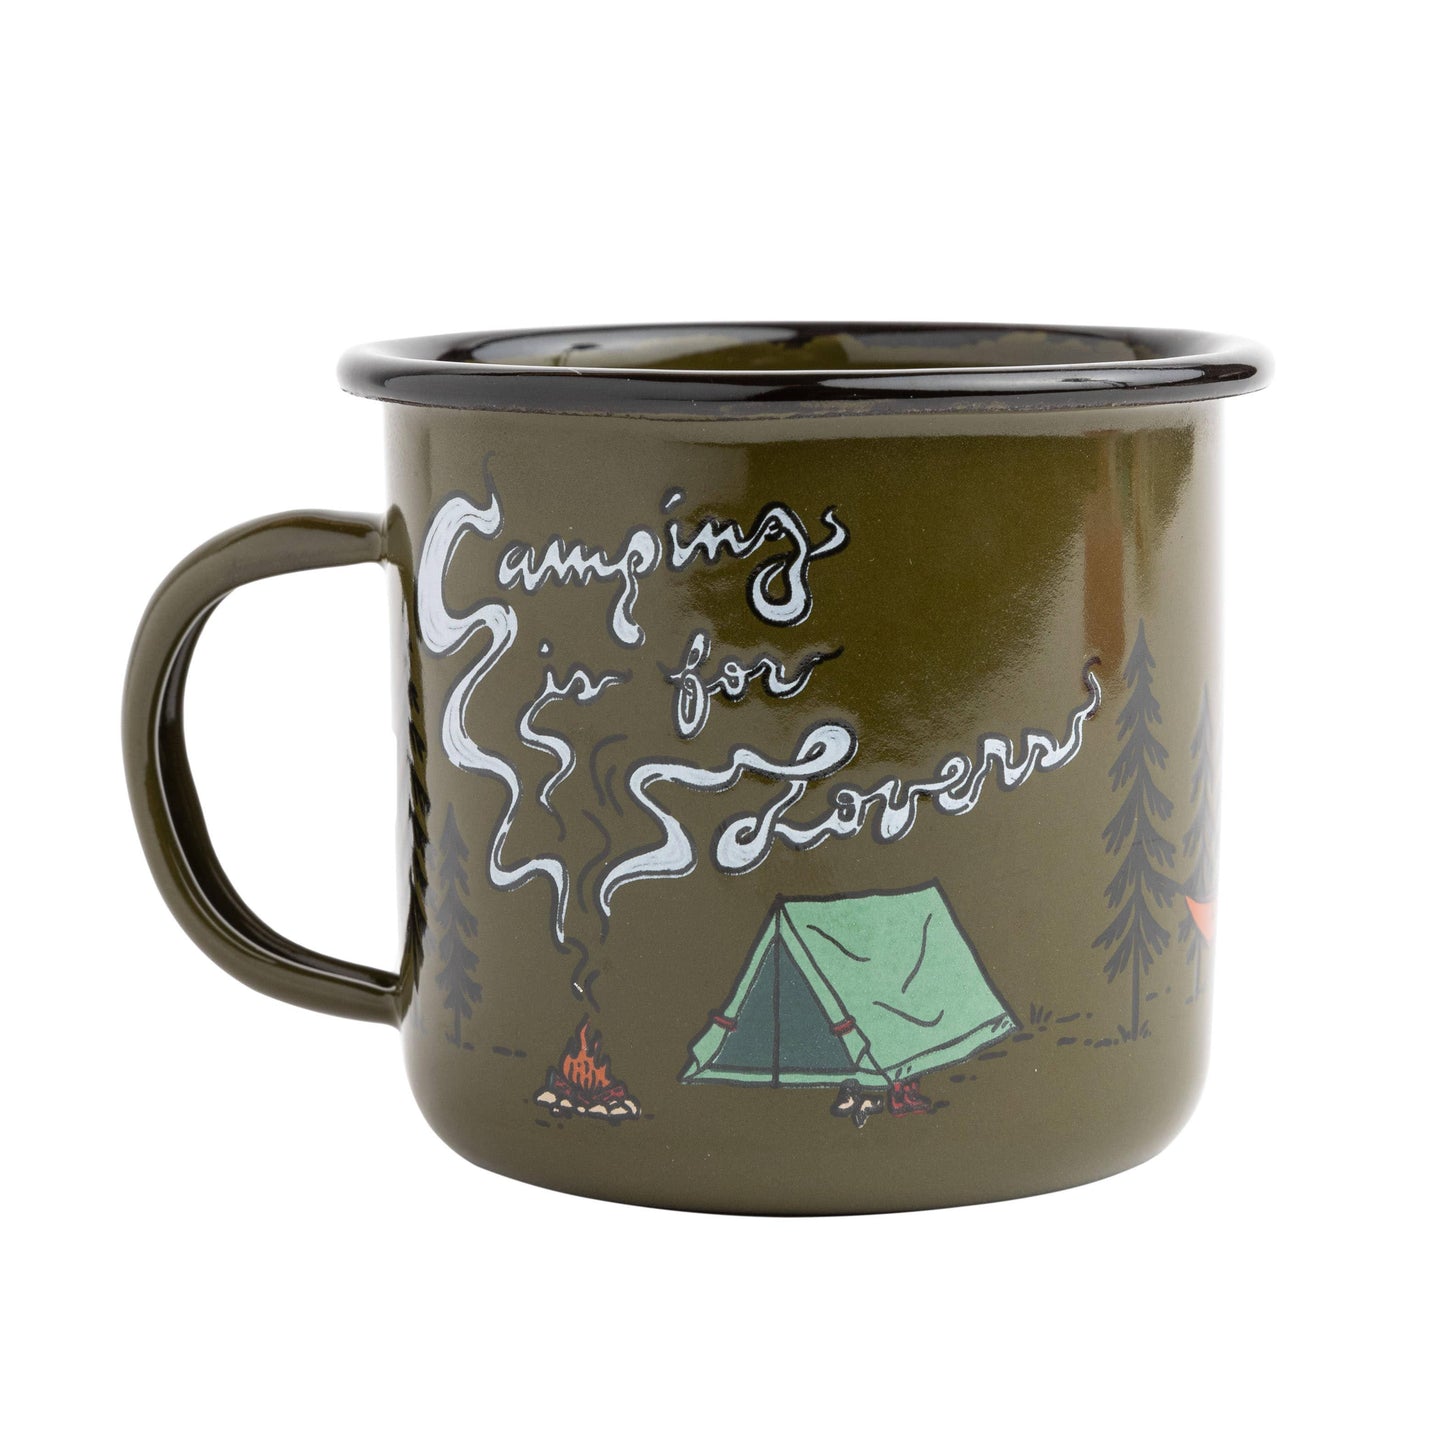 Camping Is For Lovers Enamel Mug - Trek Light